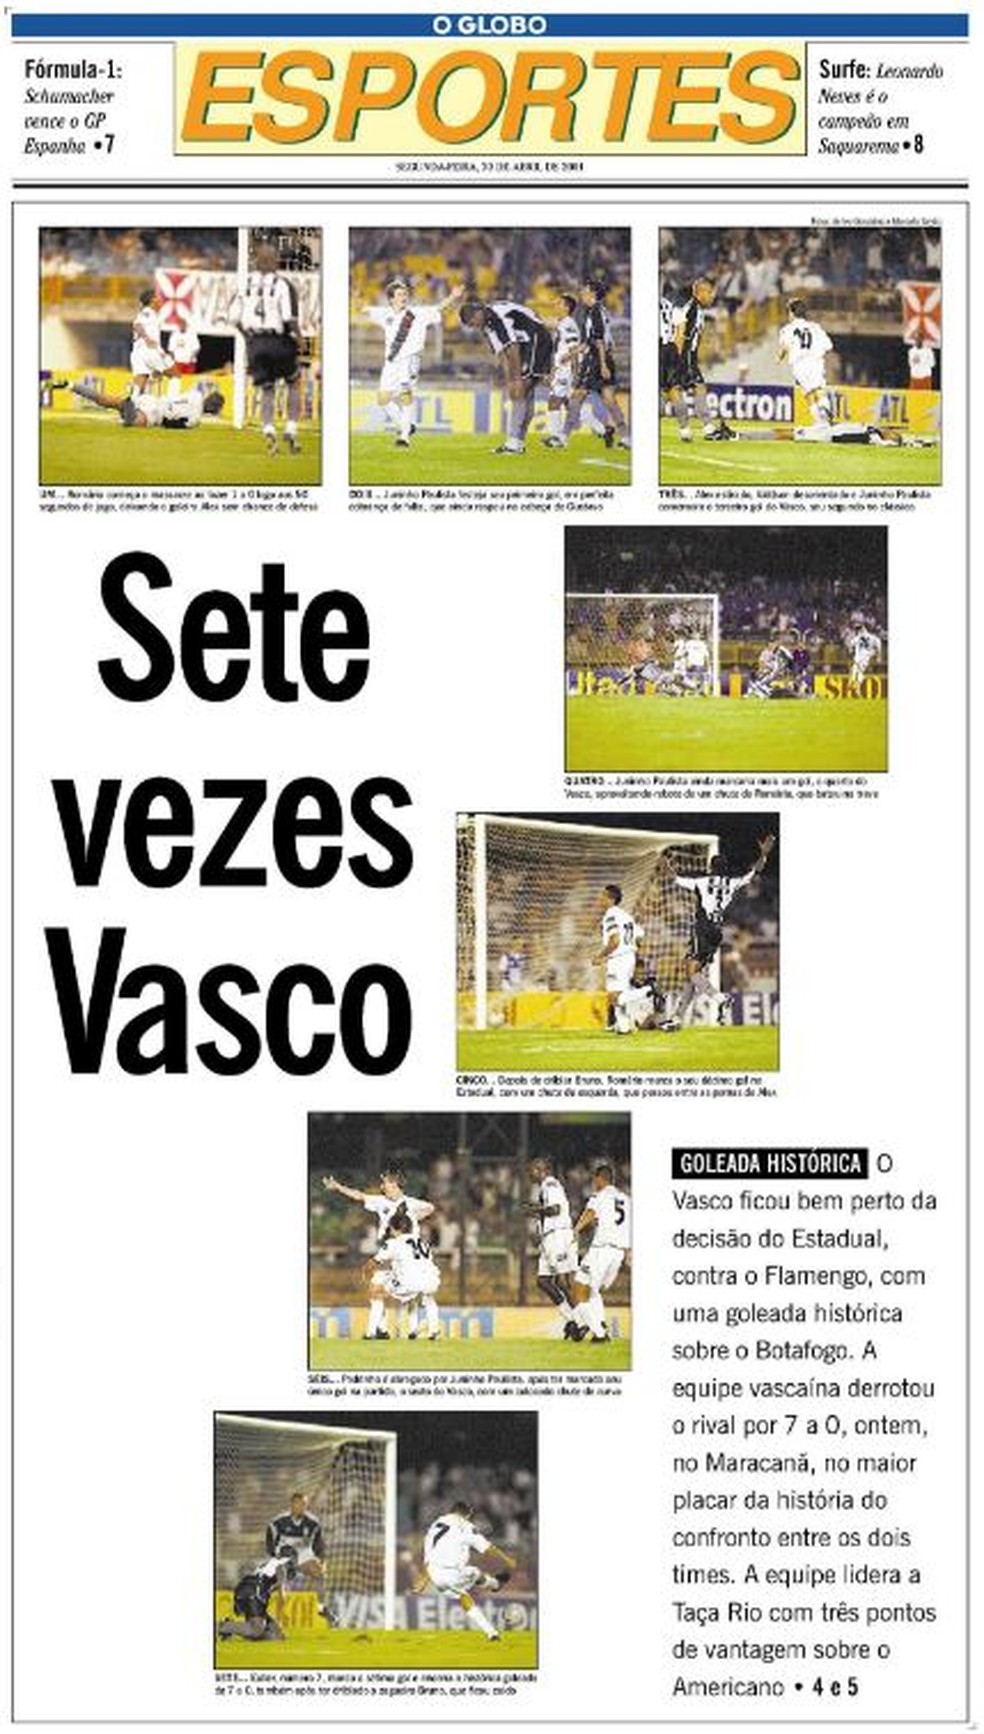 Capa do Caderno de Esportes do Jornal O Globo detalha goleada vascaína — Foto: Acervo O Globo